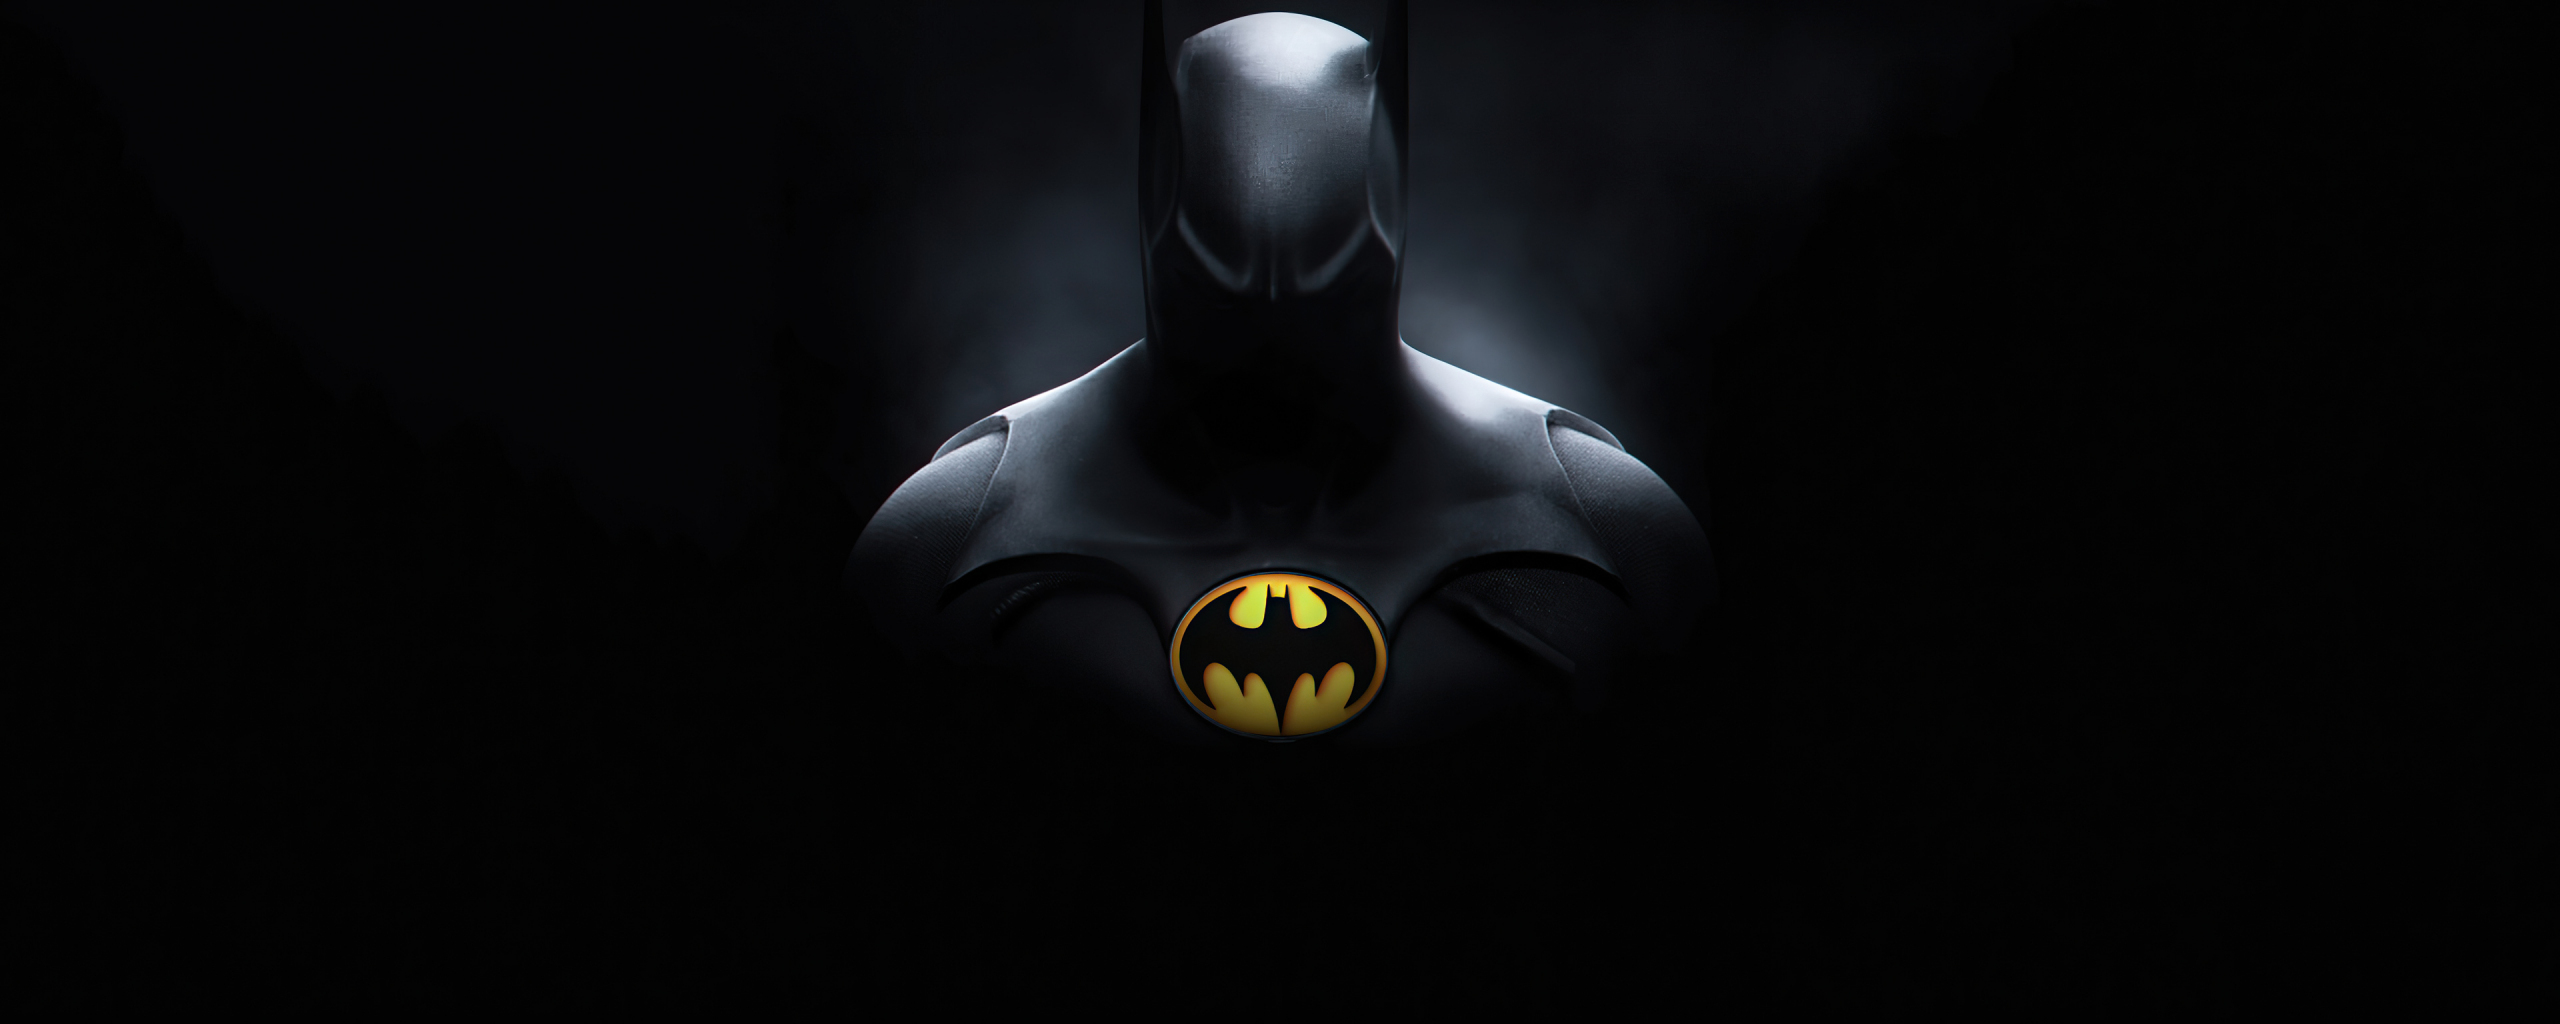 Batman, dark knight, DC Hero, 2560x1024 wallpaper